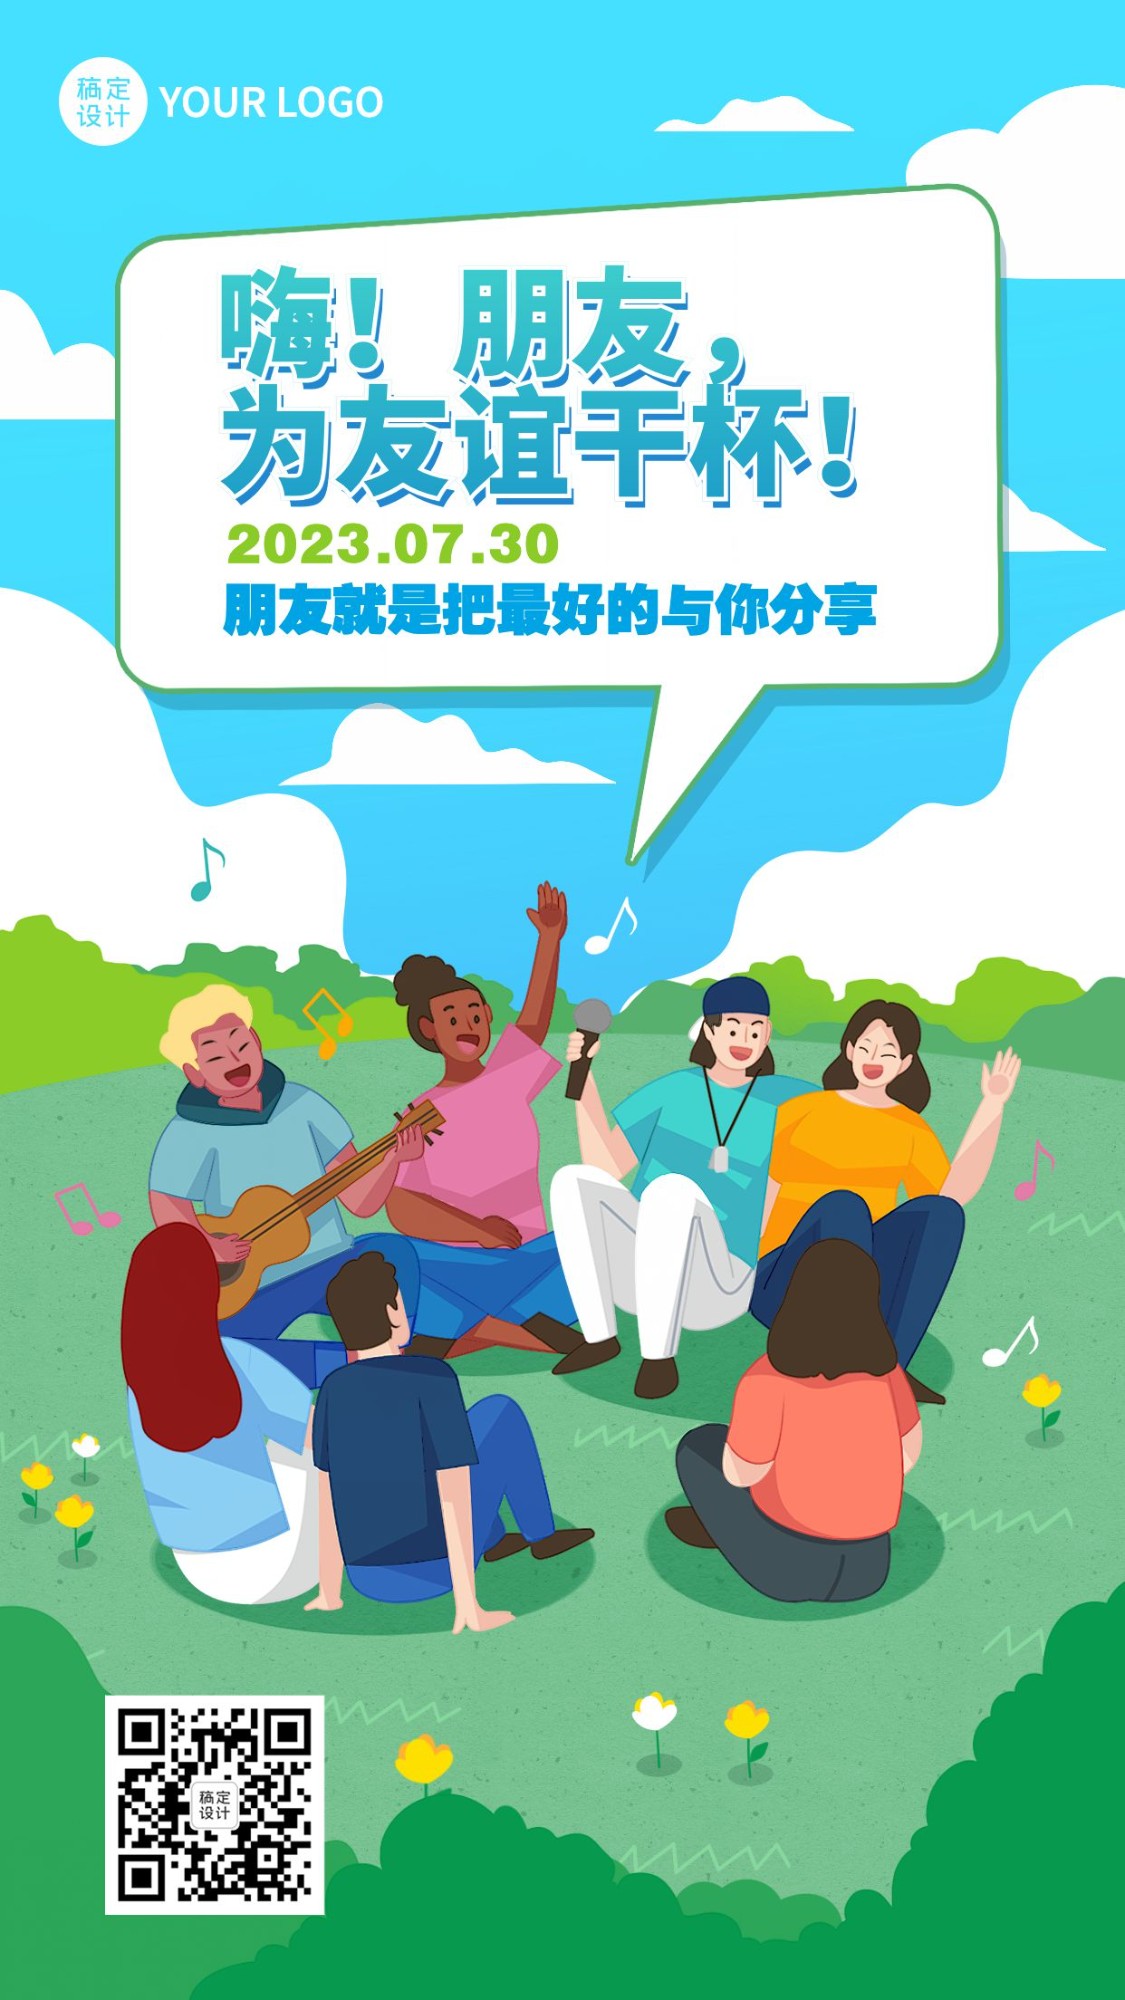 国际友谊日节日宣传手绘插画手机海报